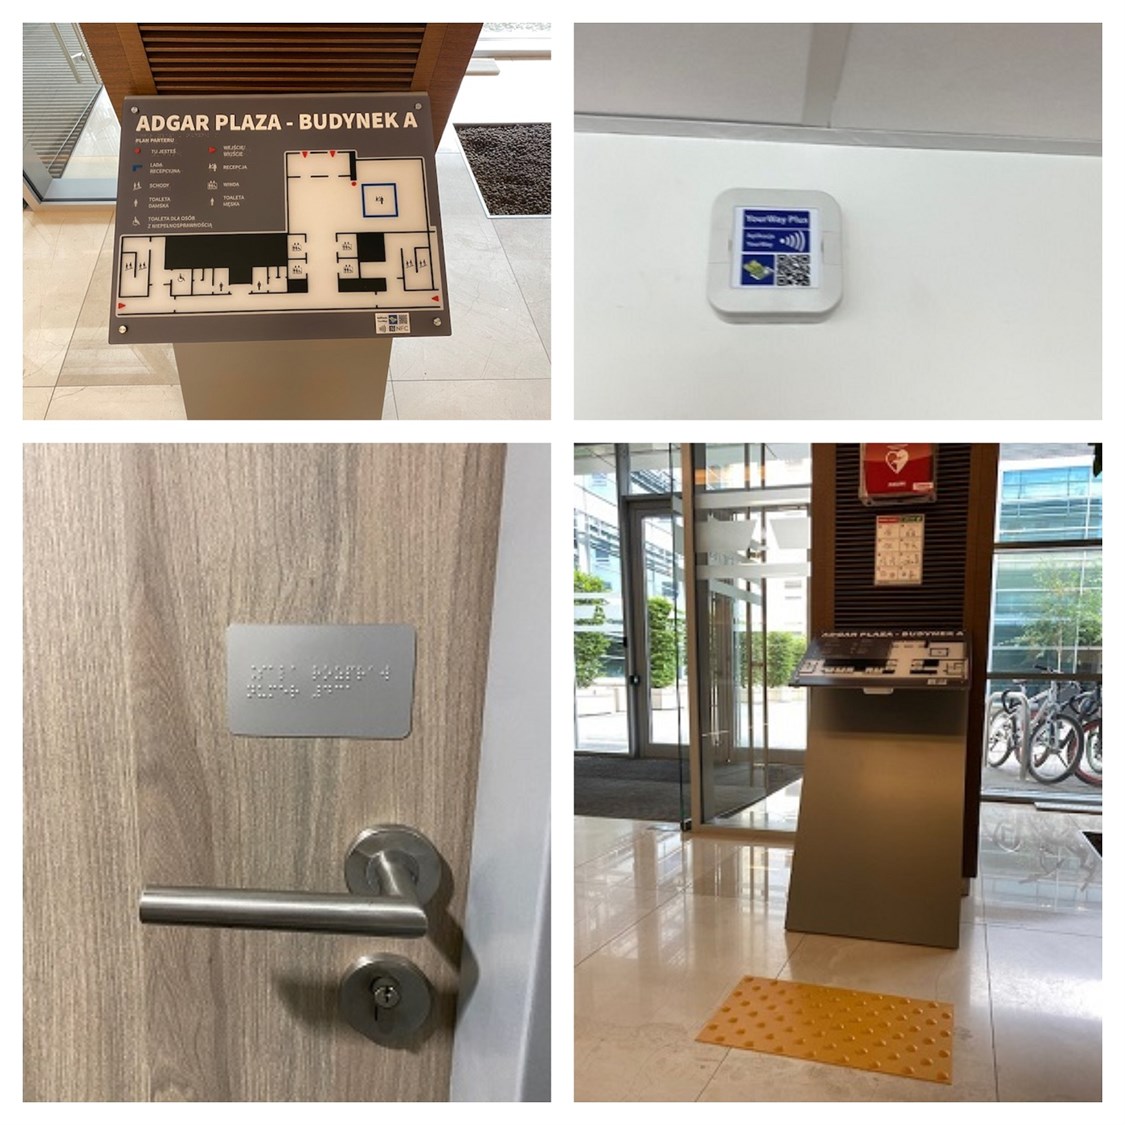 Dotykowy plan informacyjny ze znacznikami YourWay Plus i NFC, znacznik YourWay Plus w korytarzu, aluminiowe tabliczki informacyjne w budynku A kompleksu biurowego Adgar Plaza w Warszawie